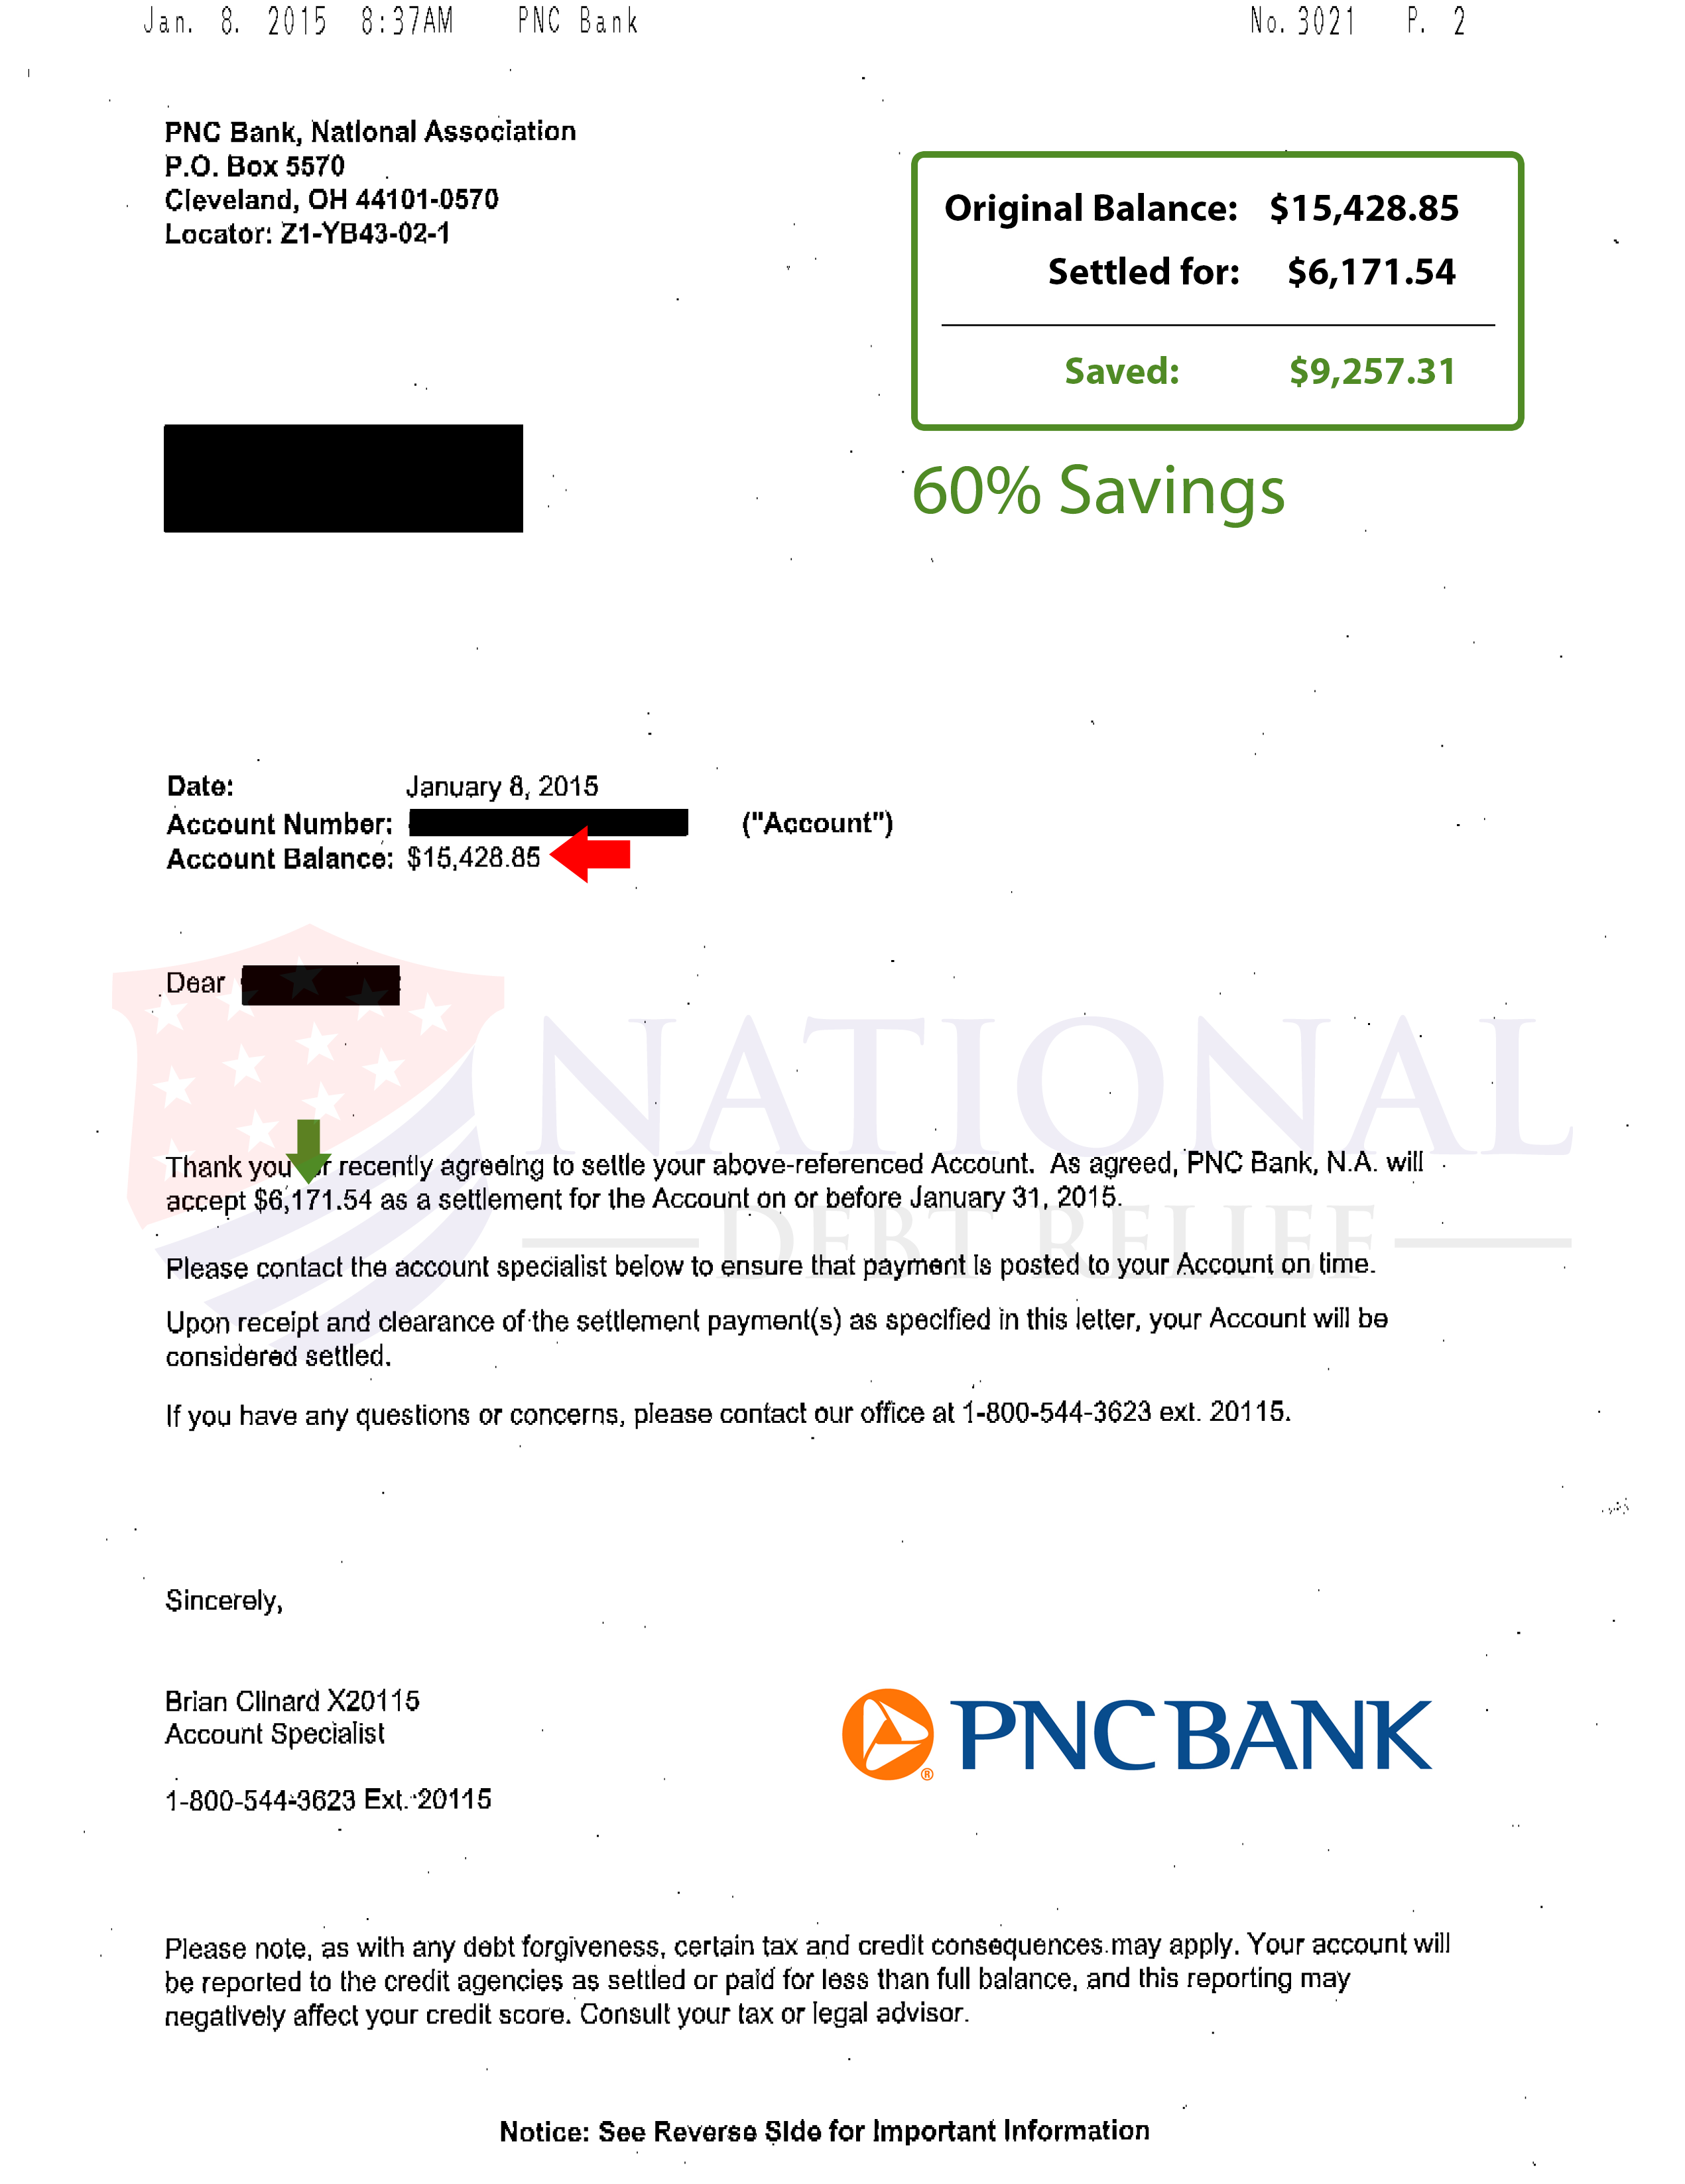 Paid In Full Debt Settlement Letter from www.nationaldebtrelief.com